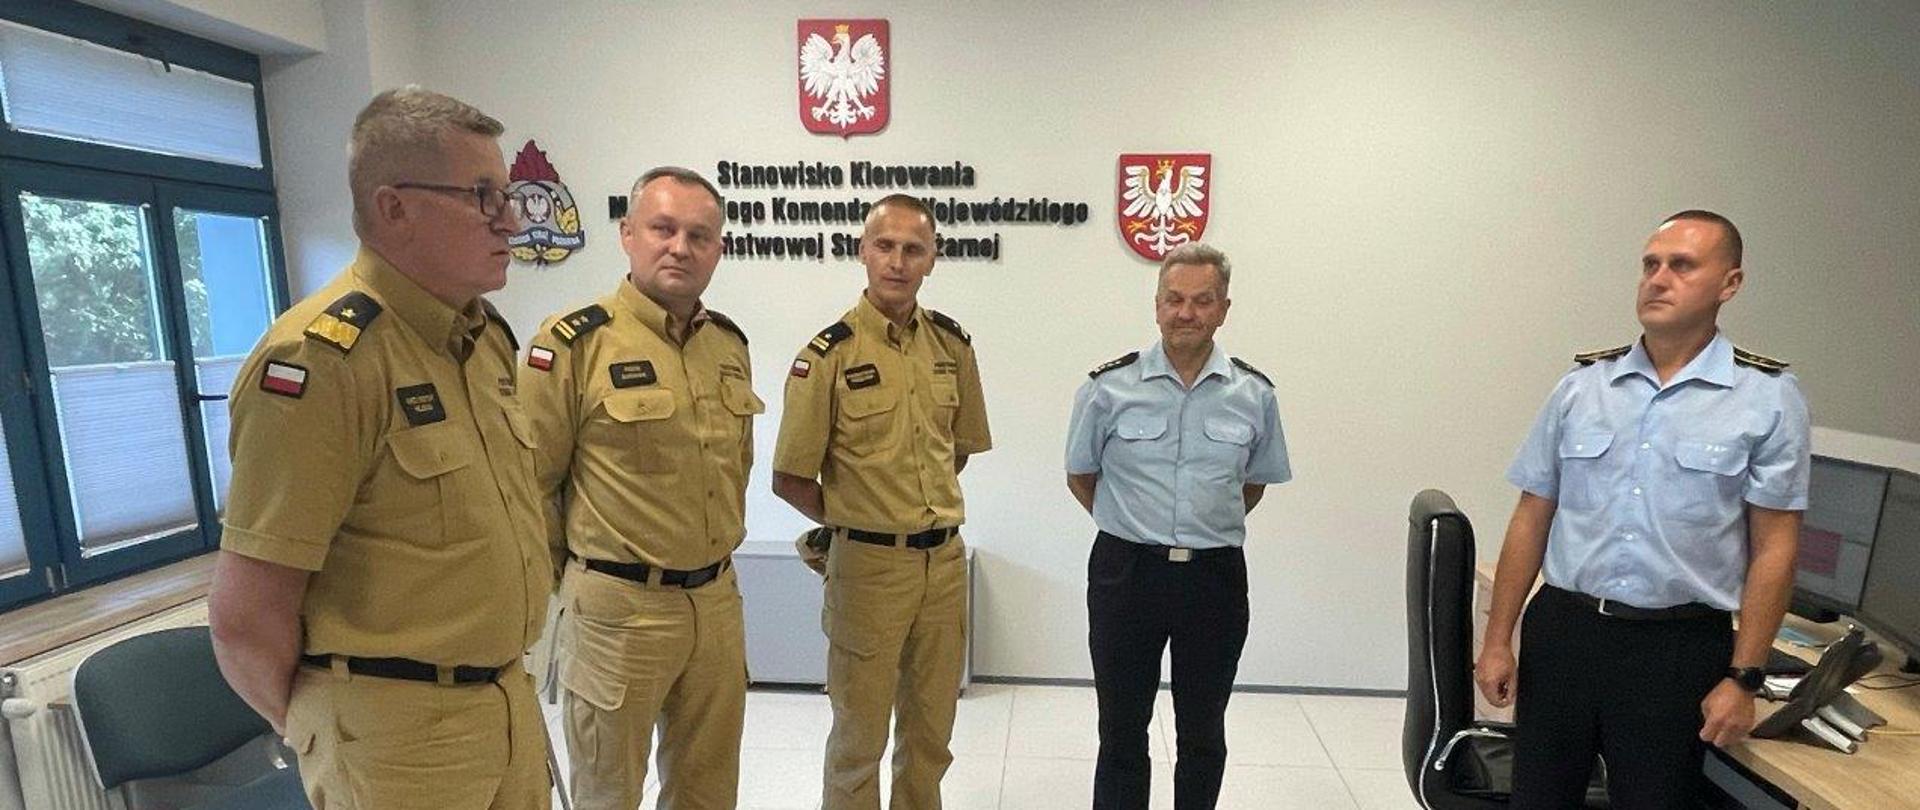 5 funkcjonariuszy PSP podczas wizytacji Stanowiska Kierowania Małopolskiego Komendanta Wojewódzkiego